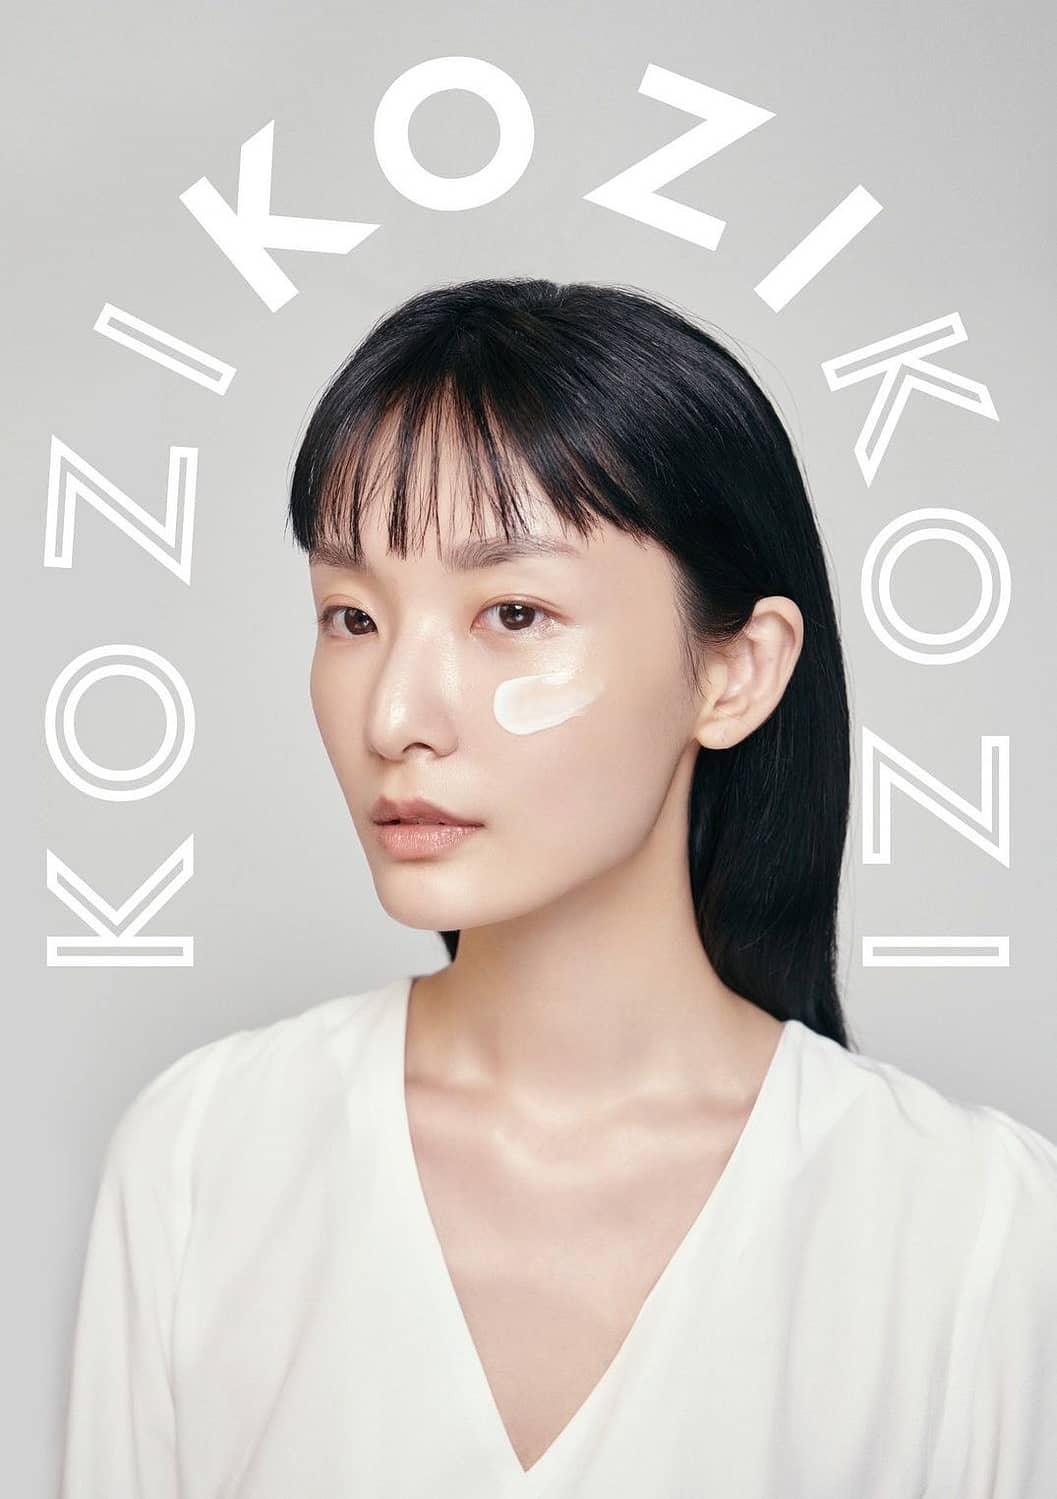 纯净无添加保养品牌 KOZI 全台上市中！提倡有意识的保养，肌肤稳定３步骤，提升肌肤免疫力！